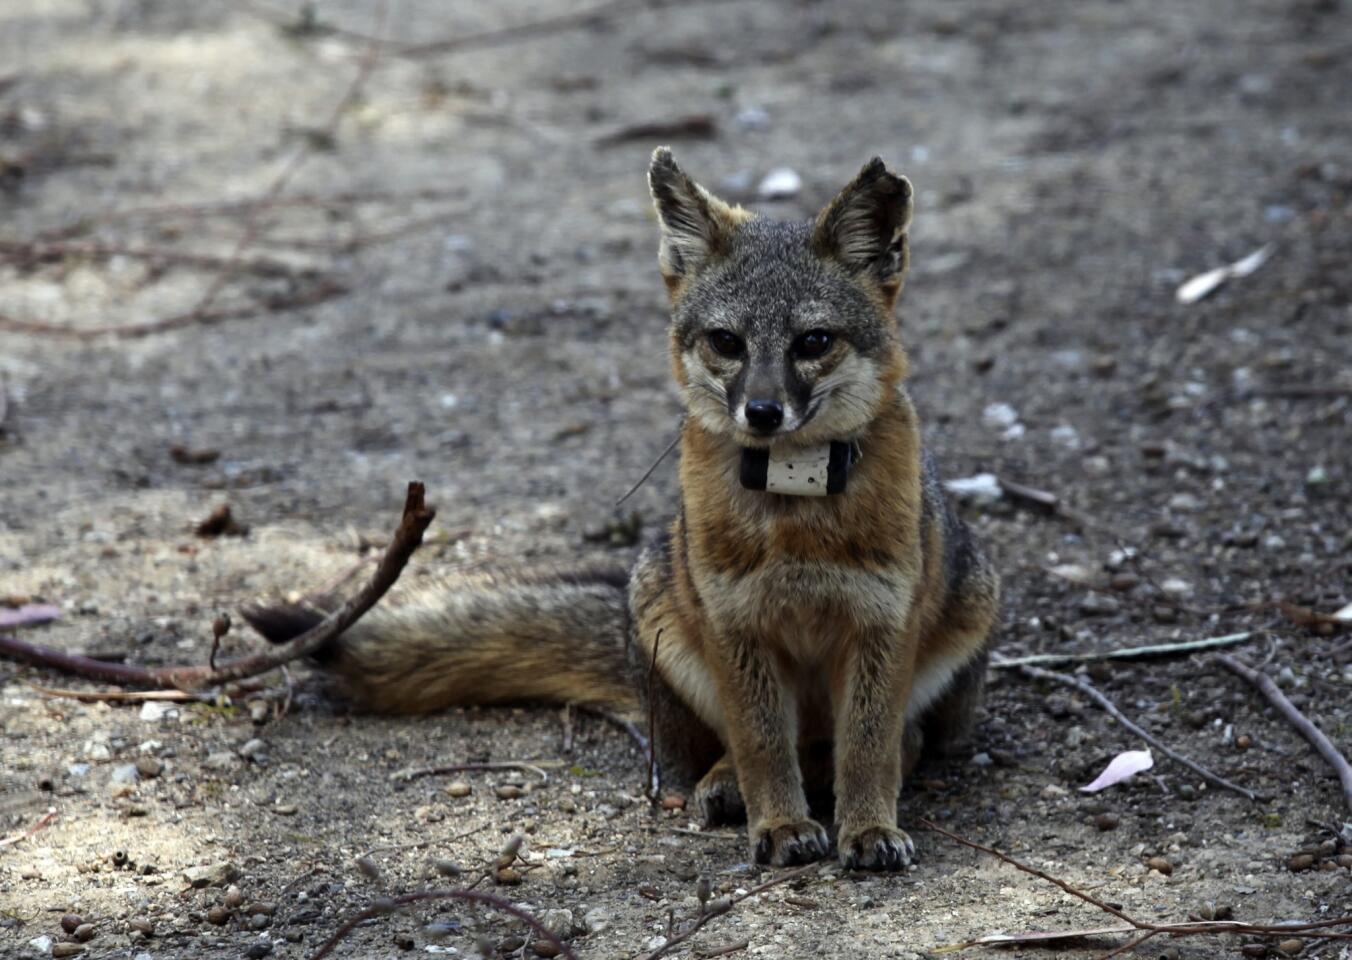 The Catalina Island Fox